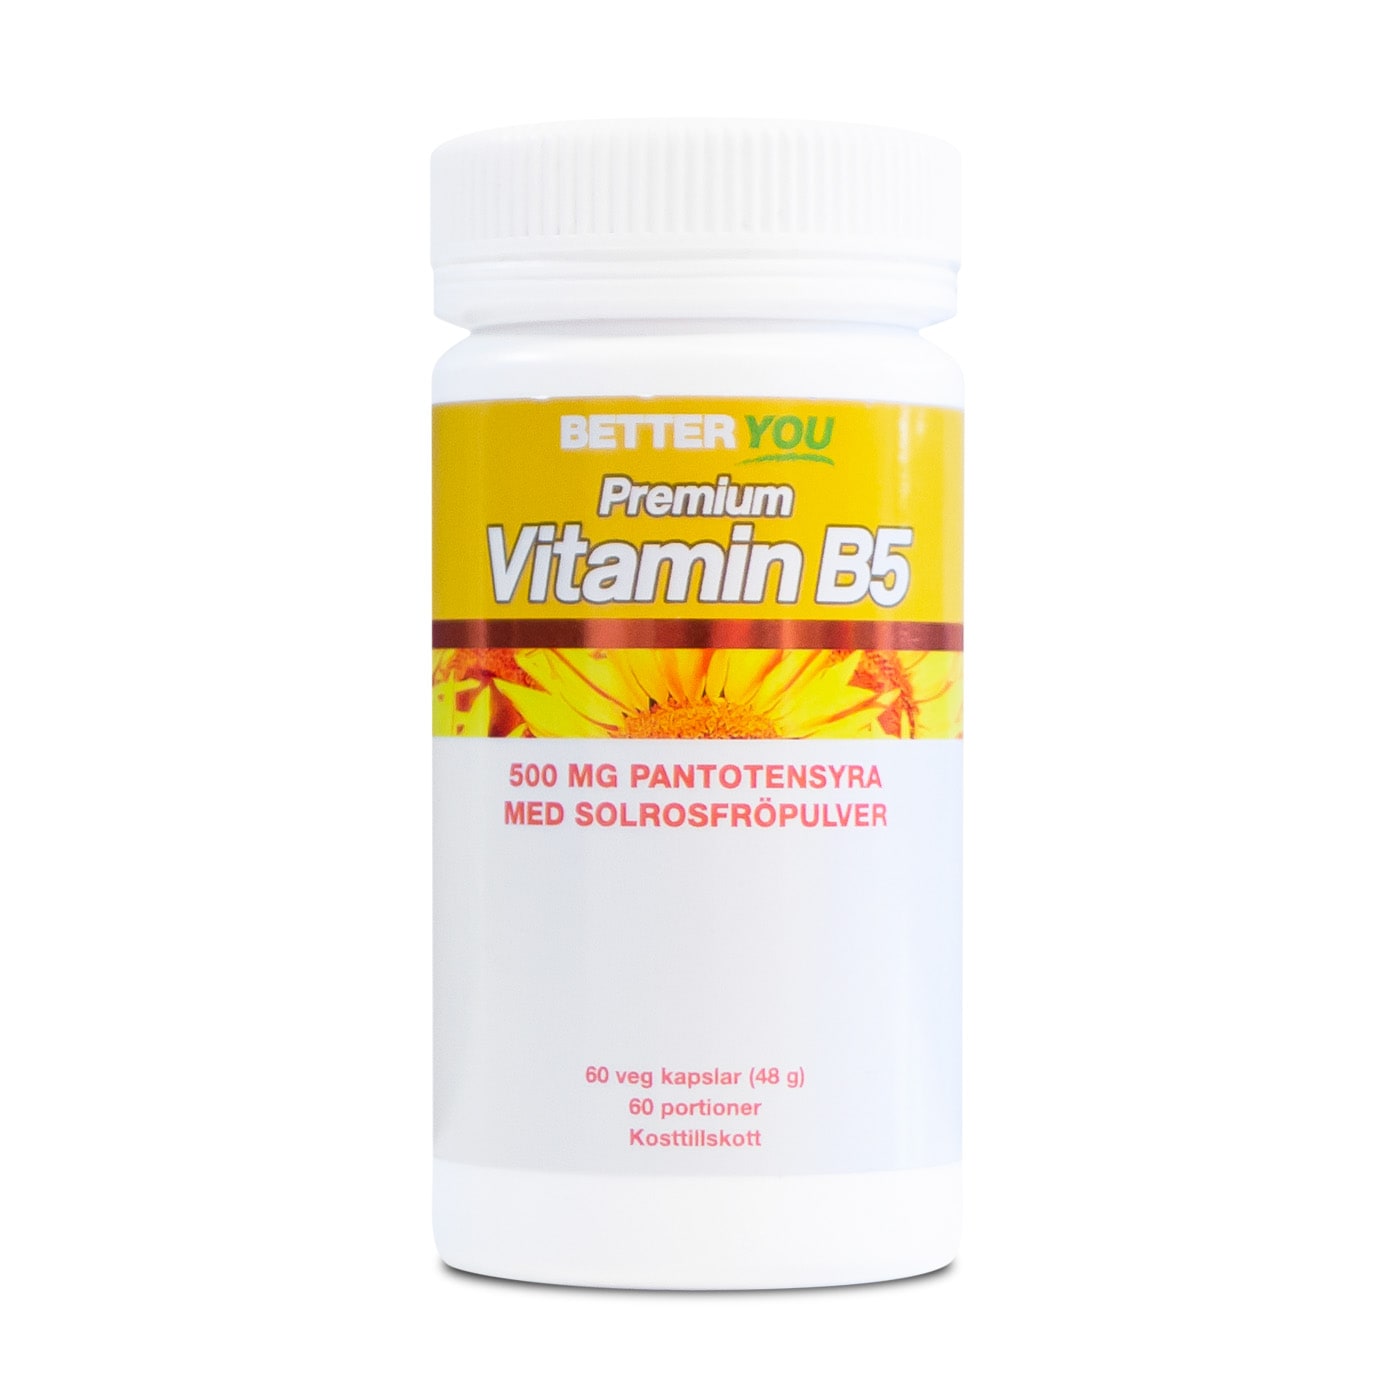 Premium Vitamin B5